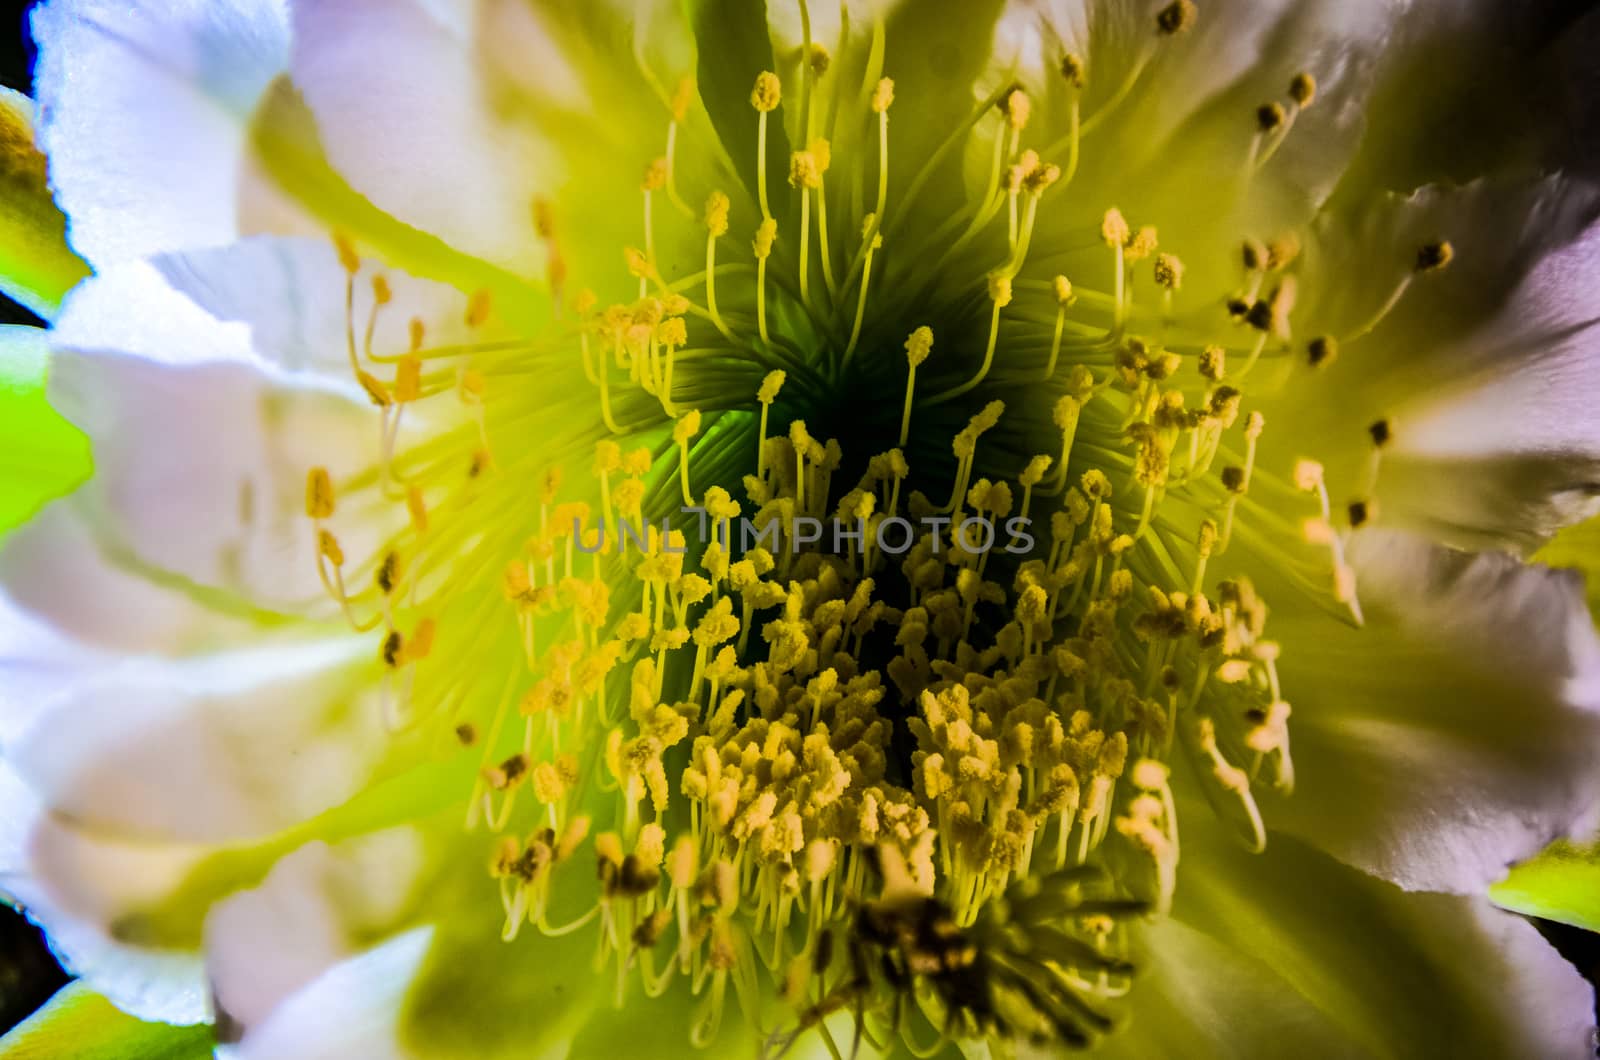 Cereus peruvianus by p.studio66